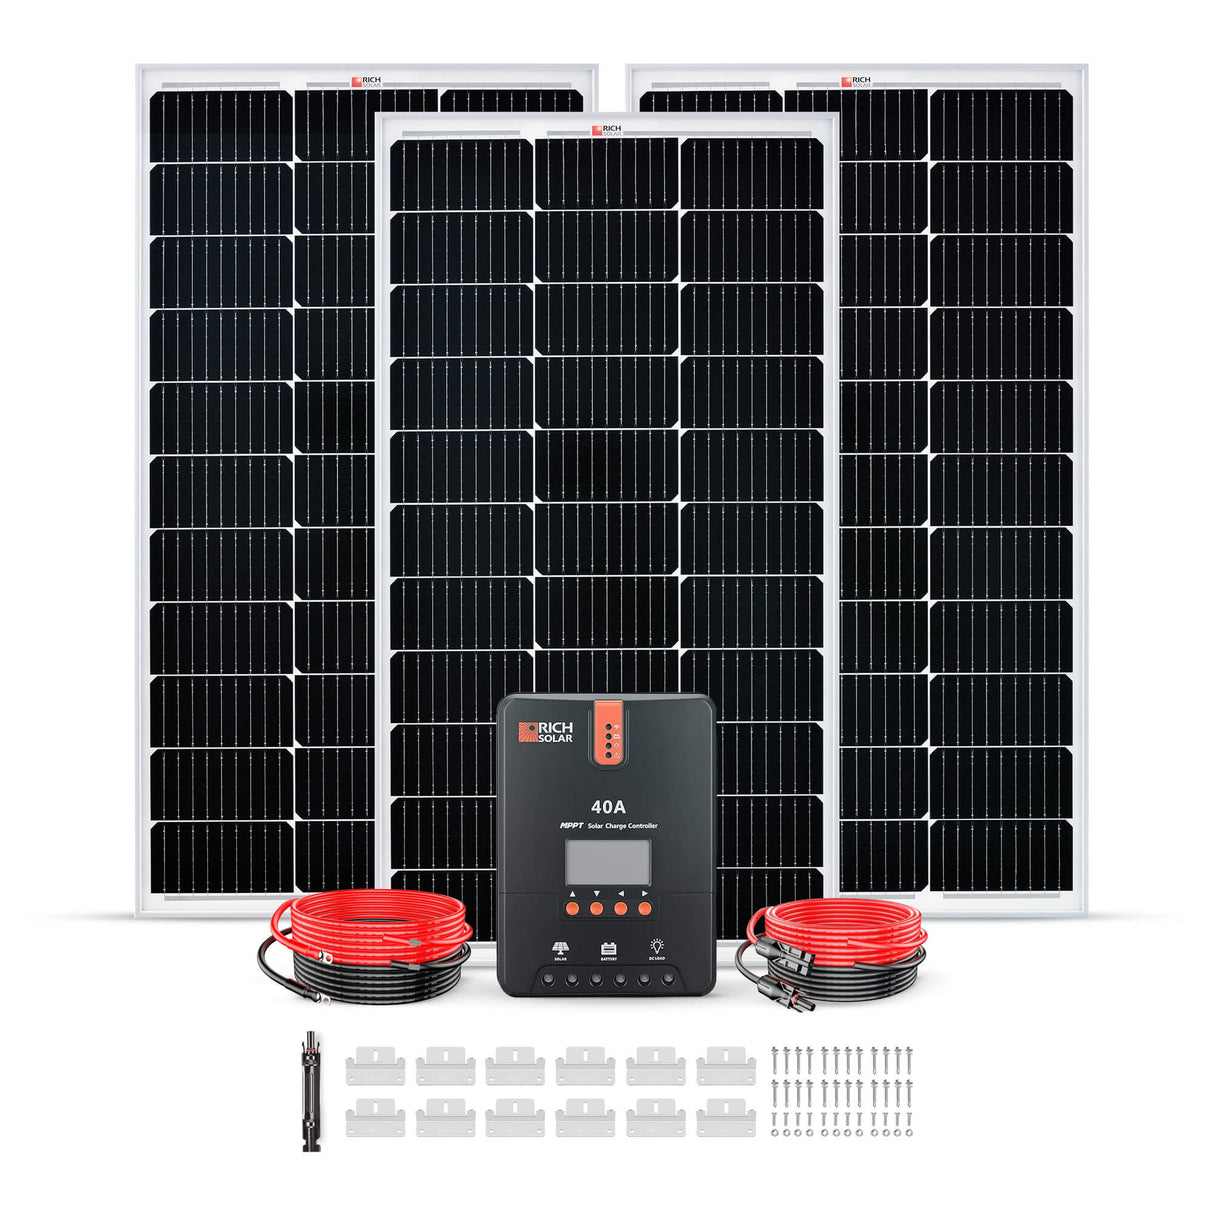 300 Watt Solar Kit - RICH SOLAR